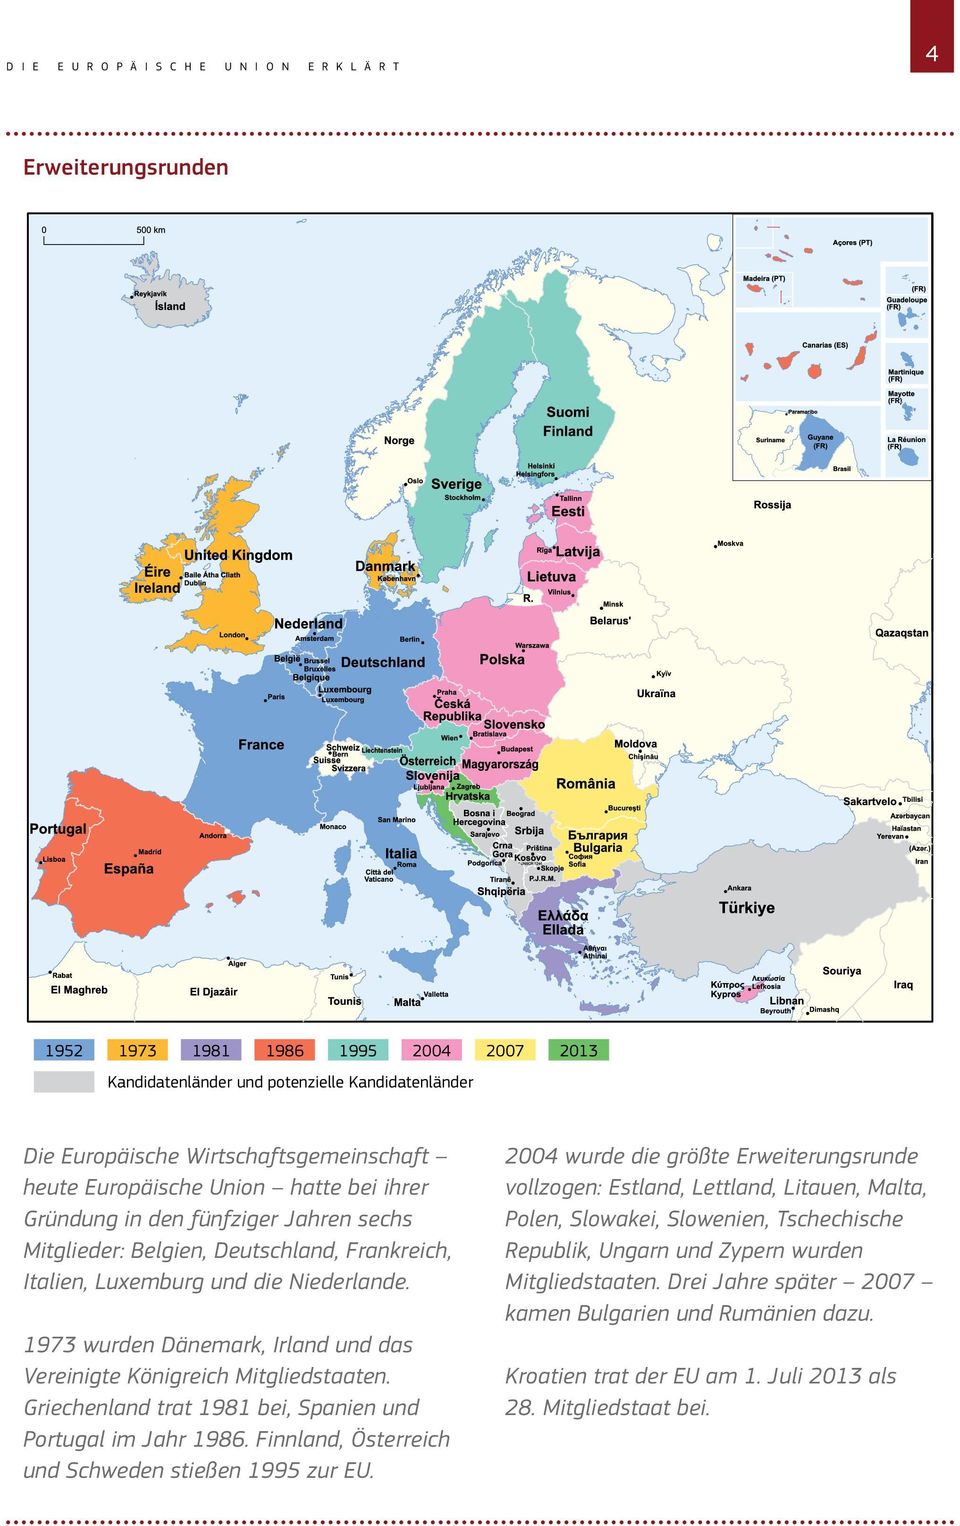 1973 wurden Dänemark, Irland und das Vereinigte Königreich Mitgliedstaaten. Griechenland trat 1981 bei, Spanien und Portugal im Jahr 1986. Finnland, Österreich und Schweden stießen 1995 zur EU.